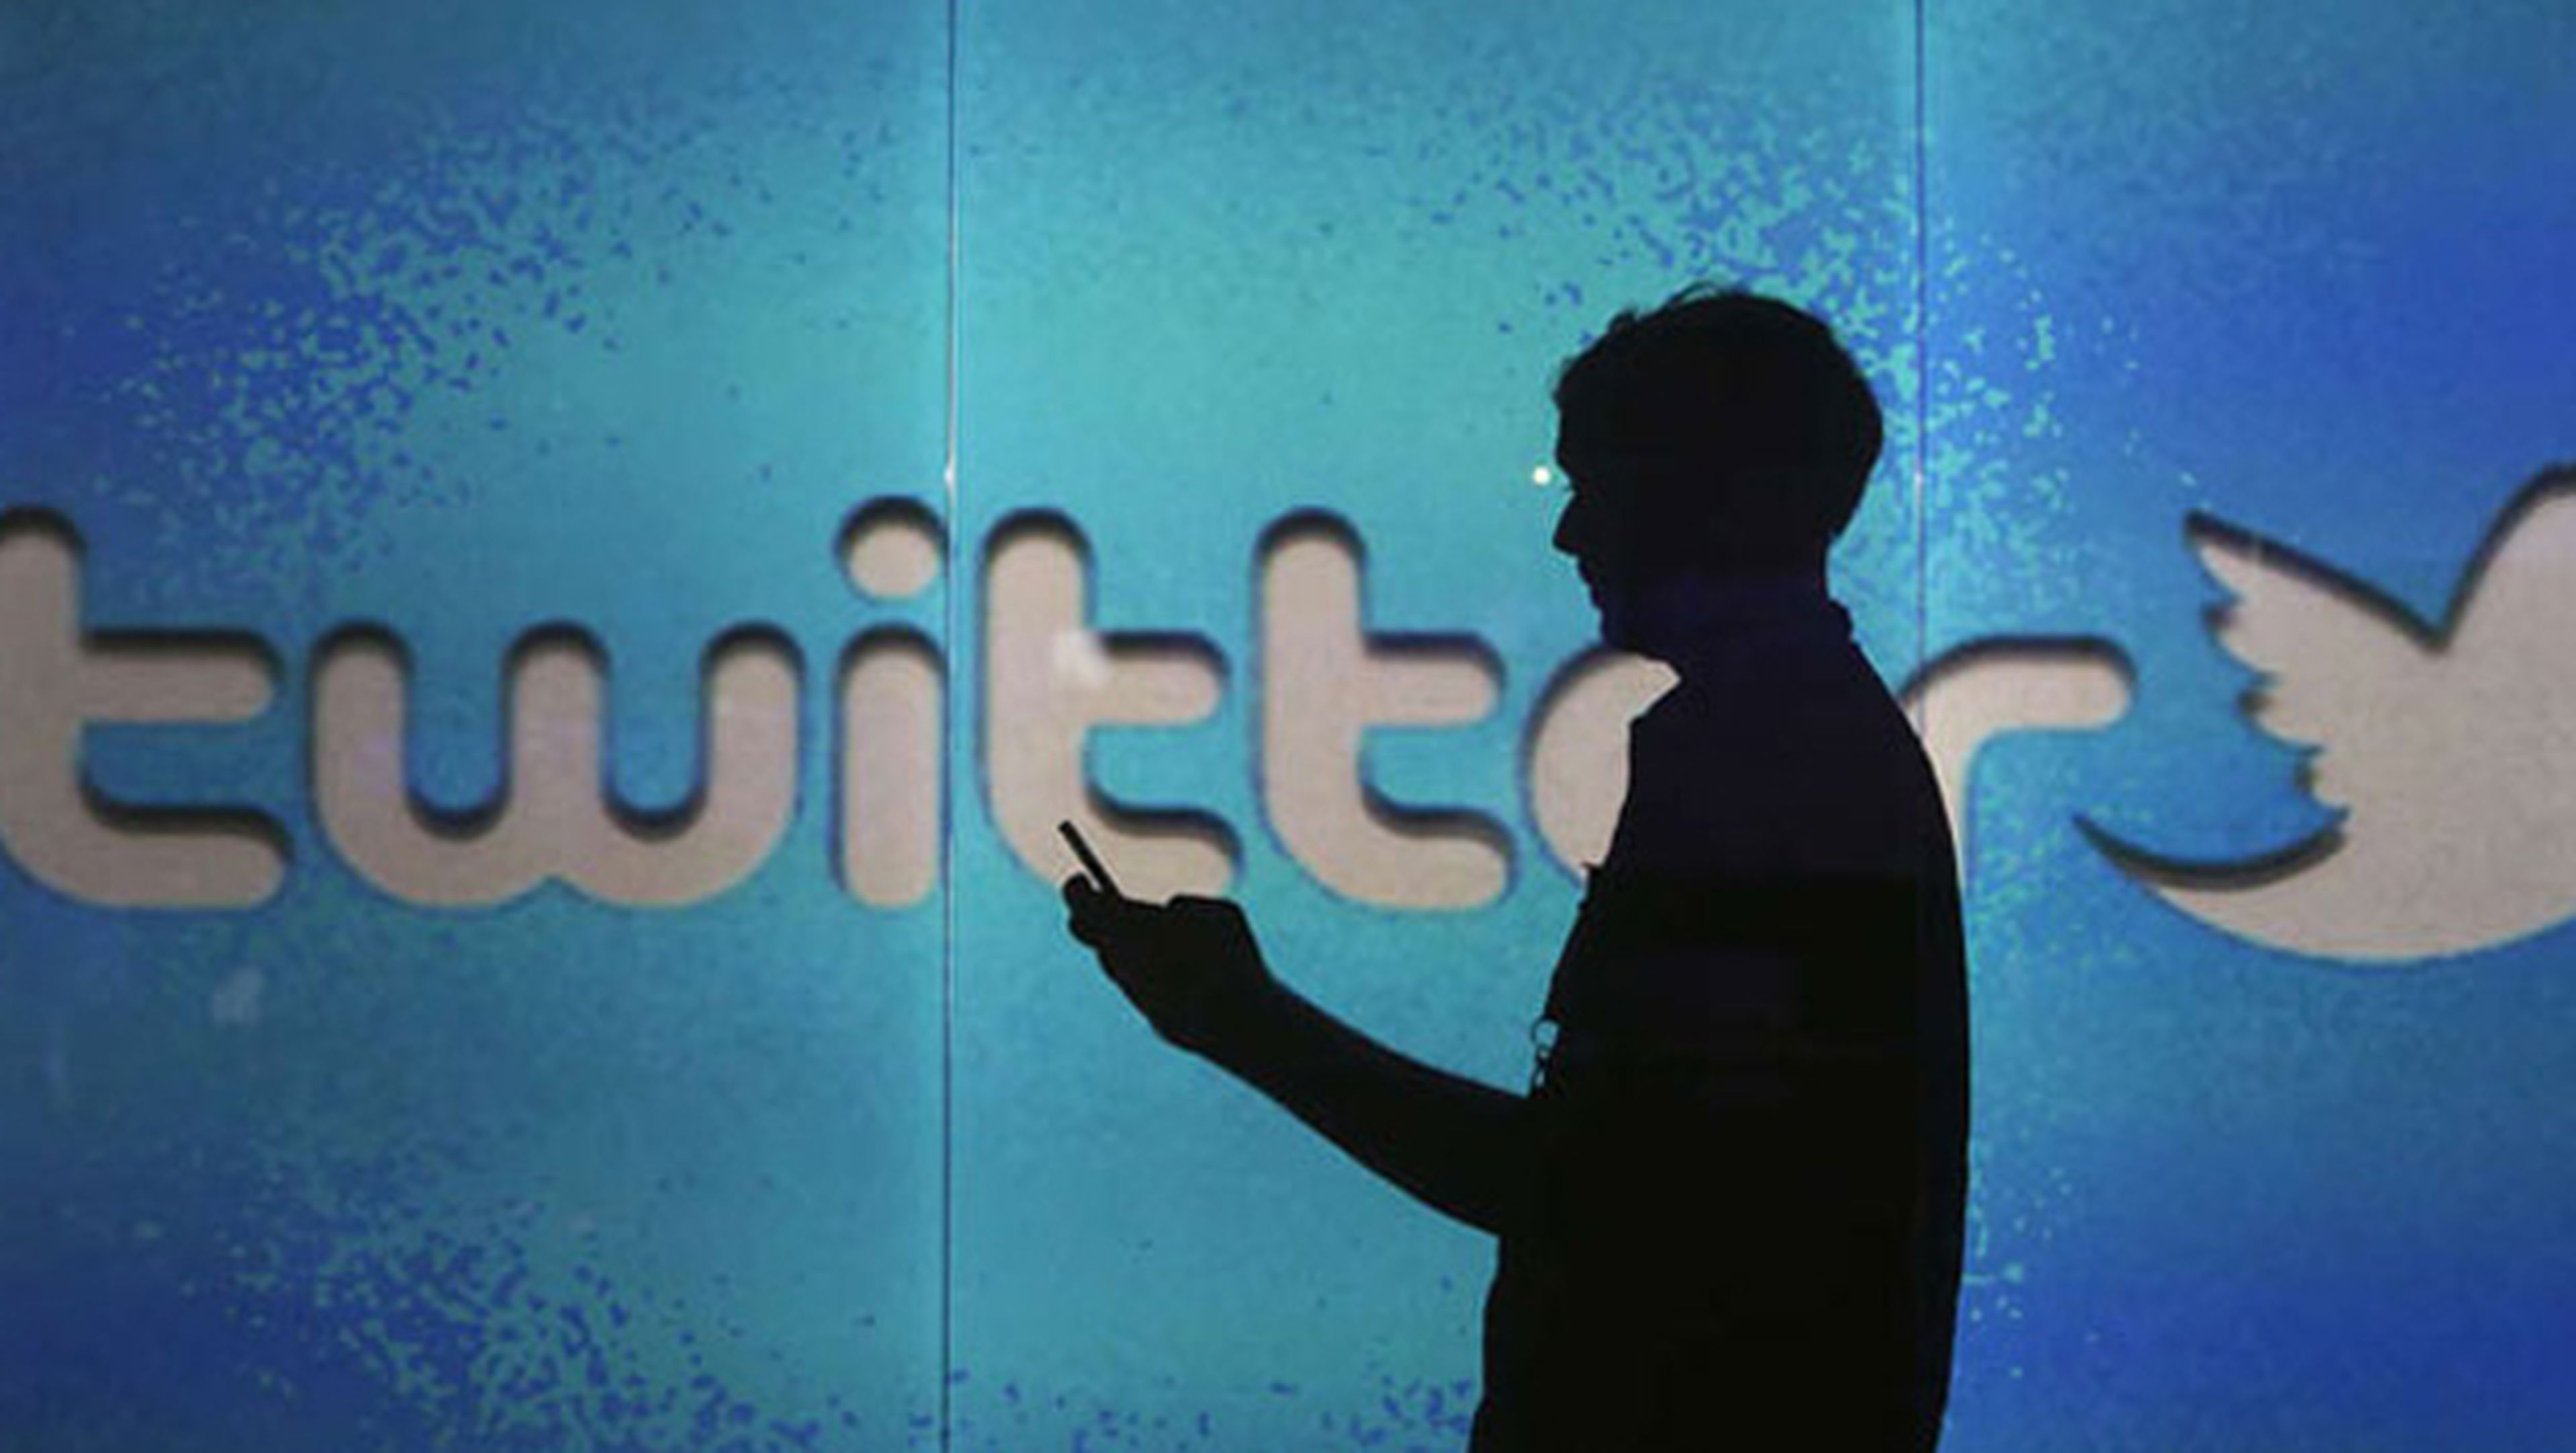 Científicos descubren 6 tipos de conversaciones en Twitter